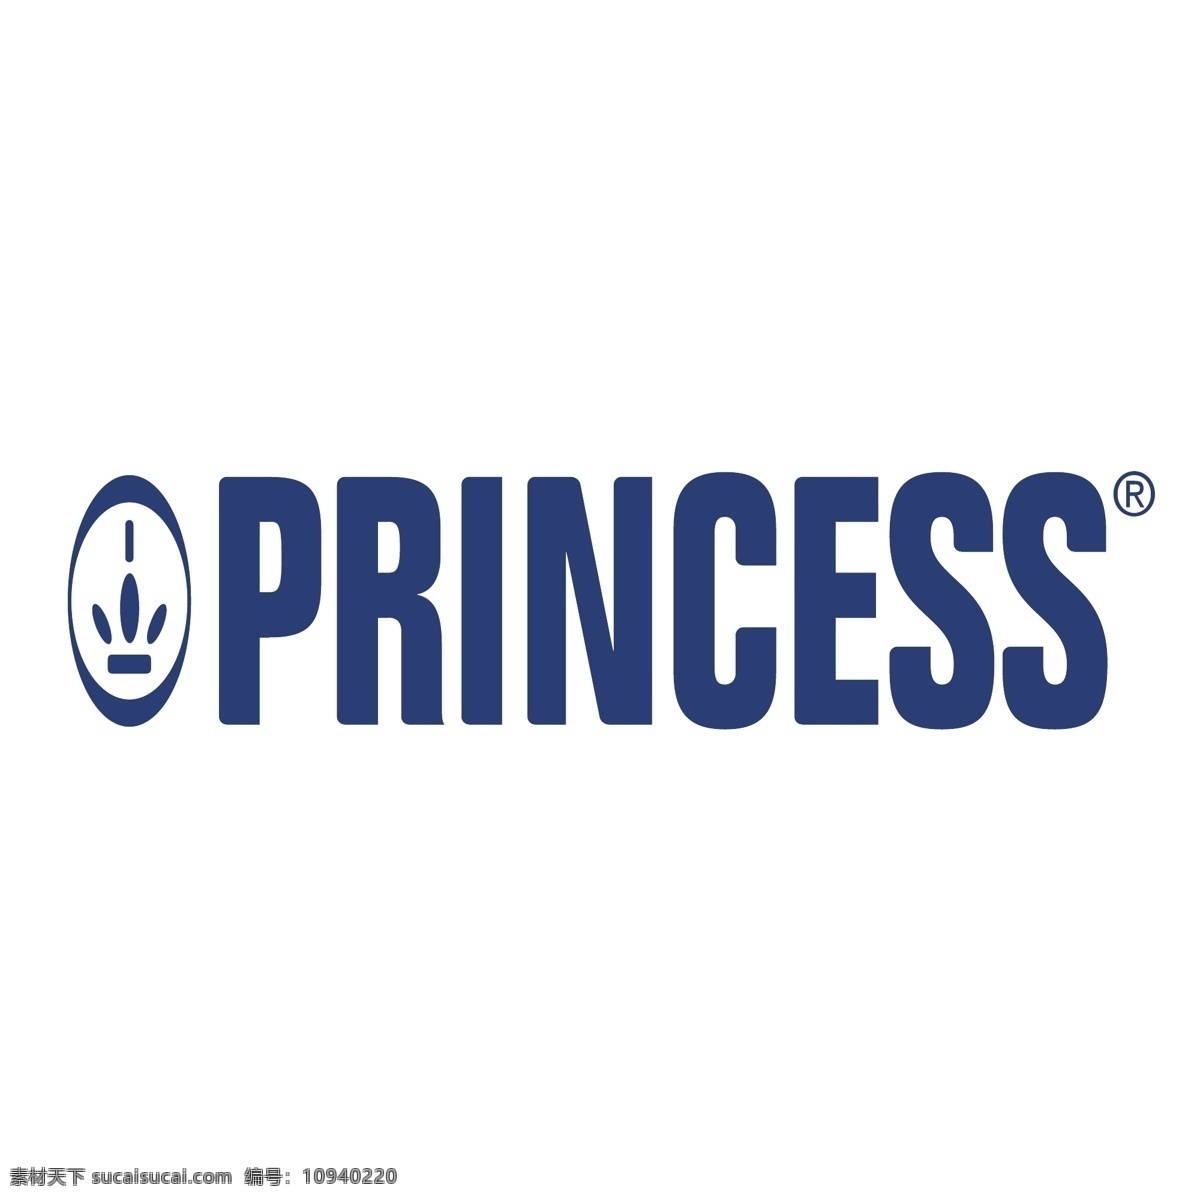 公主 公主公主 矢量 迪士尼 艺术 载体 皇冠 免费 图像 剪贴 画 王子 公主的皇冠 童话里的公主 建筑家居